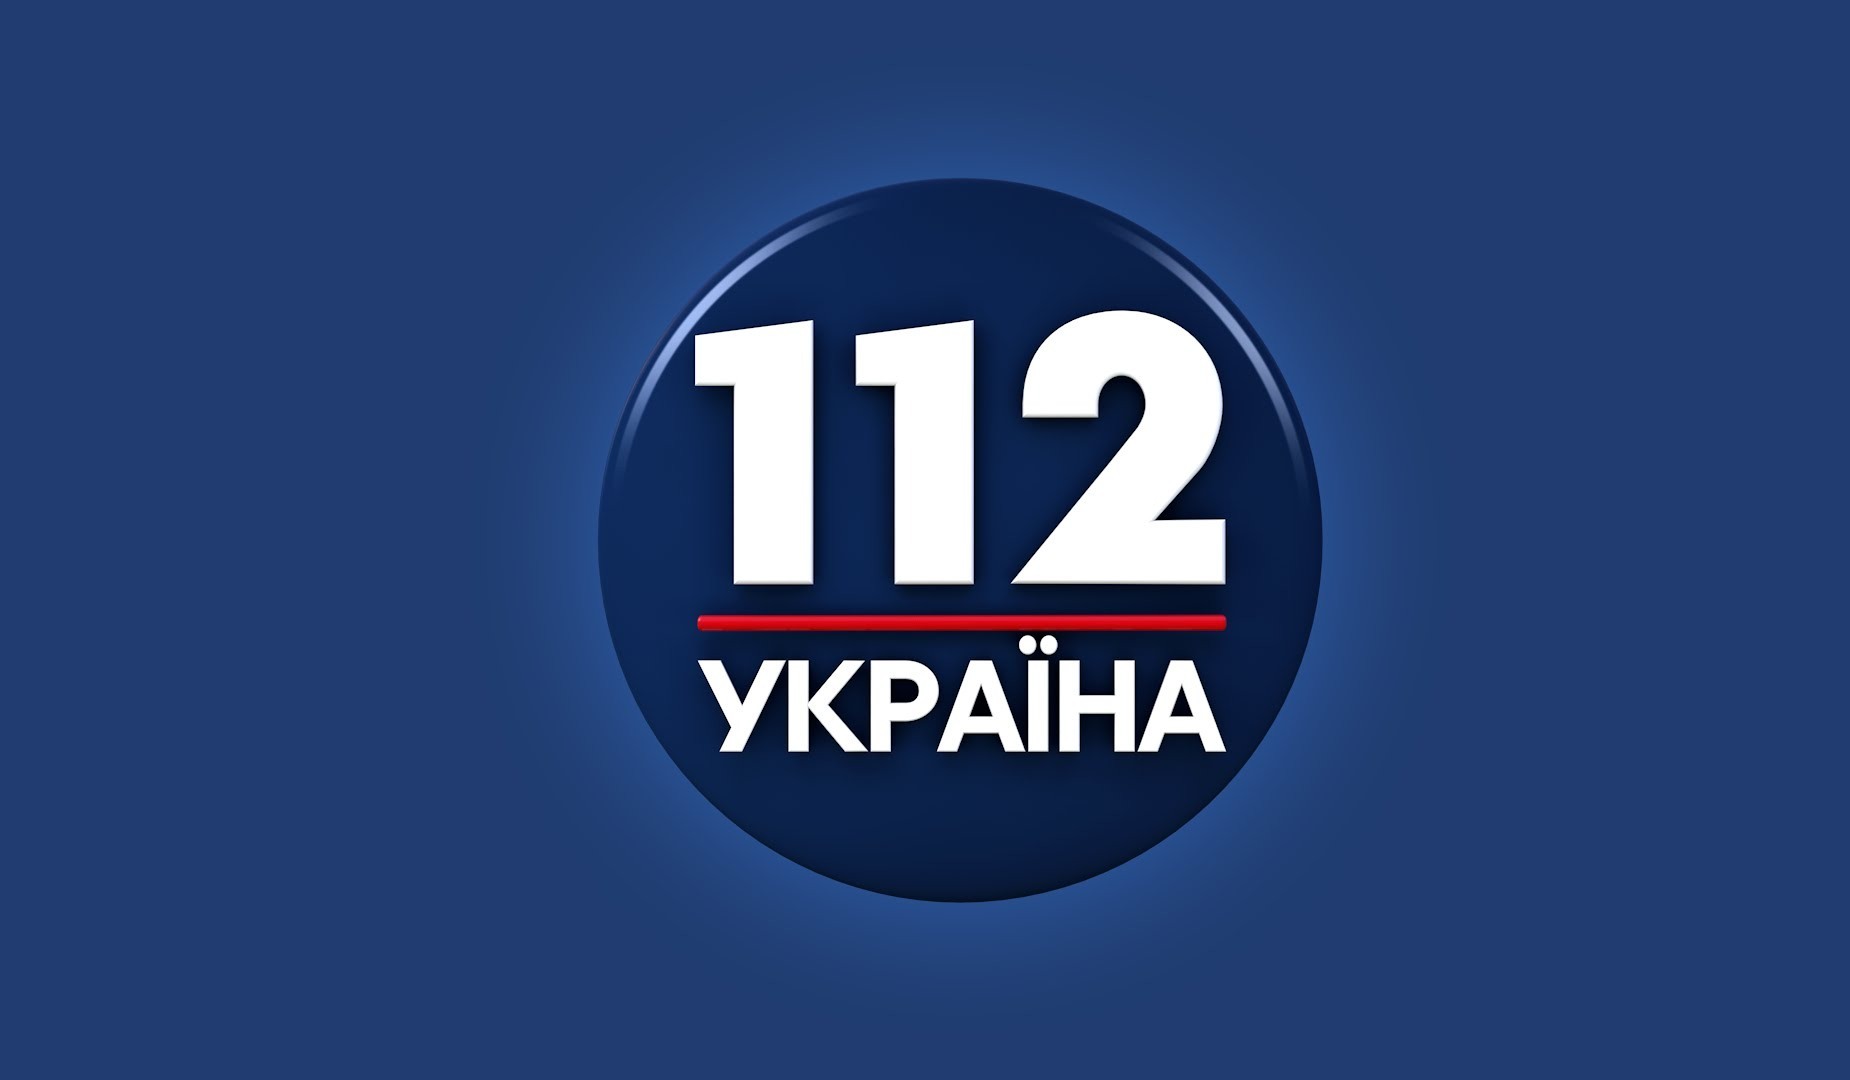 Канал «112 Україна» змінив структуру власності, Подщипков більше не директор